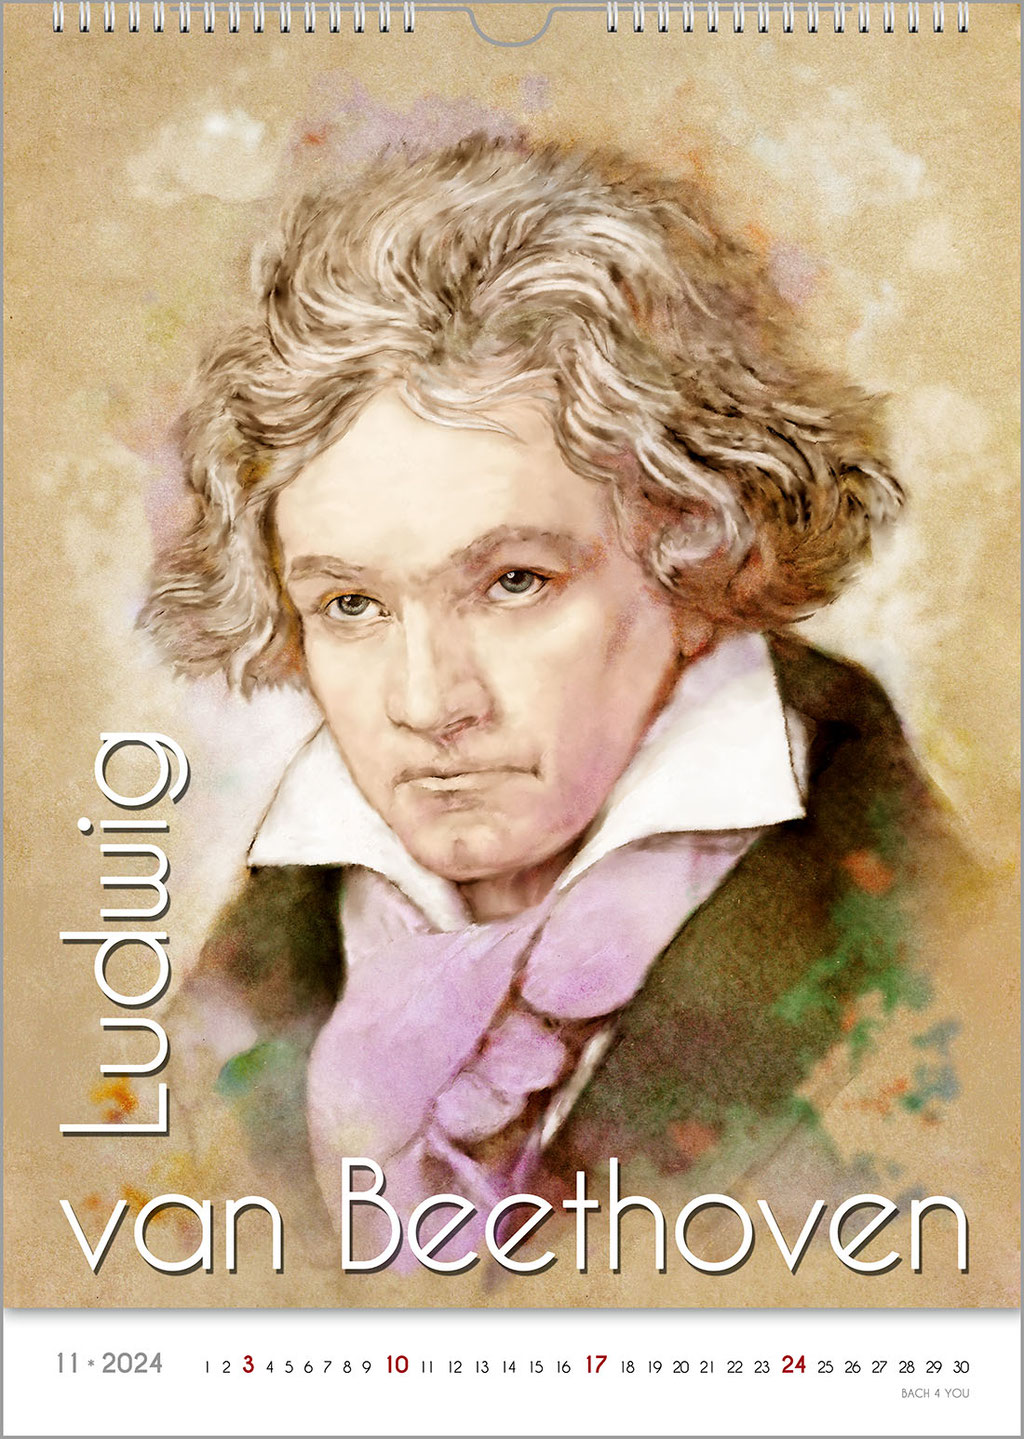 Der Beethoven-Kalender.